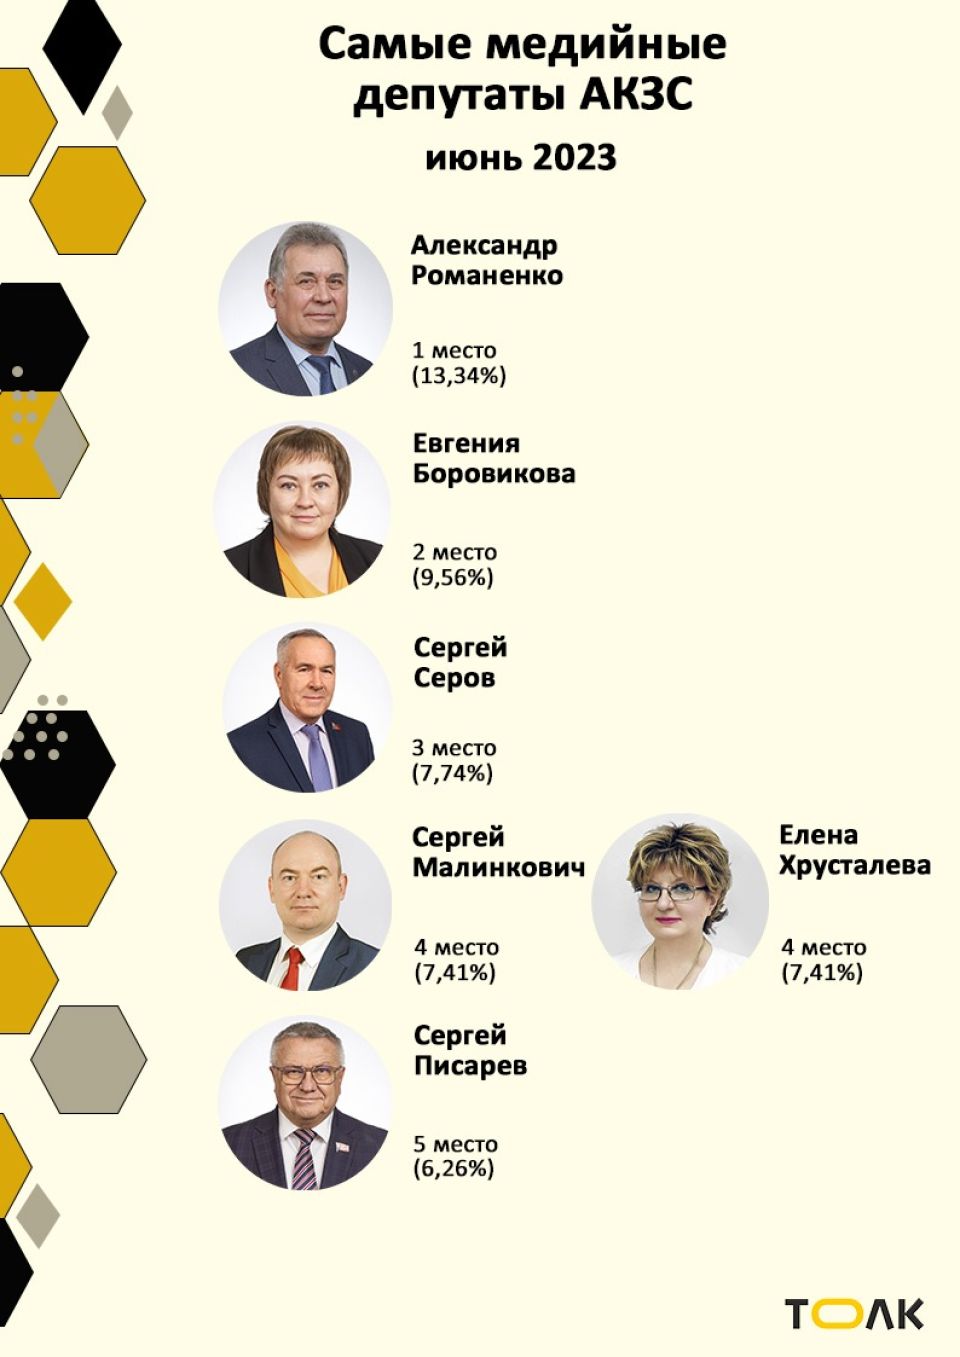 Рейтинг медийности депутатов АКЗС в июне 2023 года